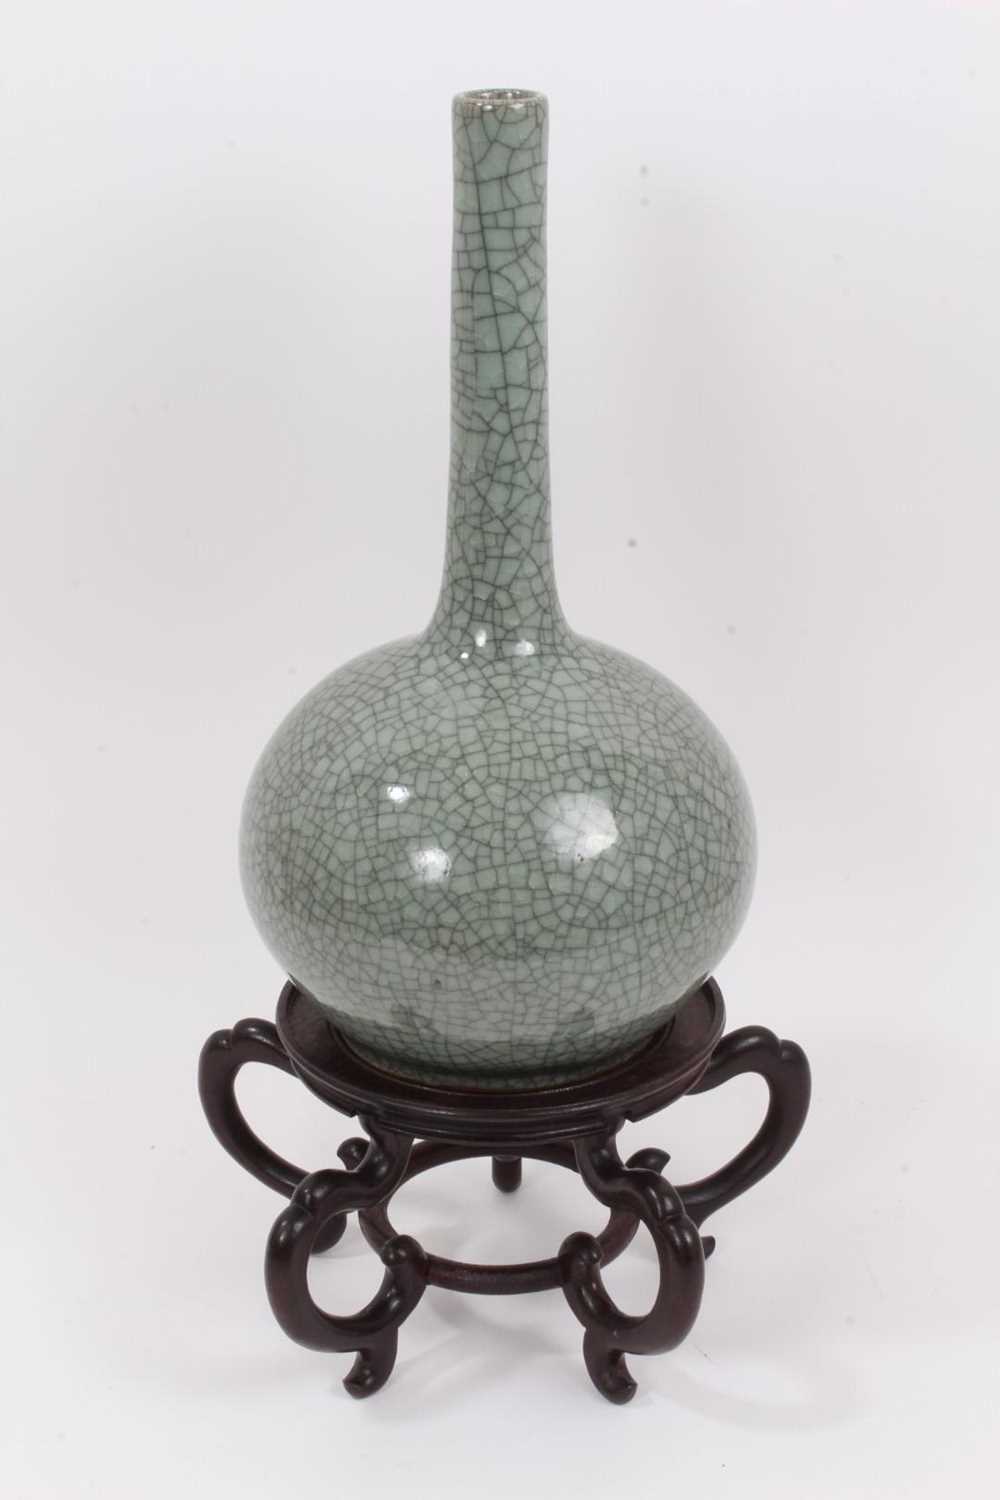 Lot 49 - An Oriental celadon crackle glazed bottle vase